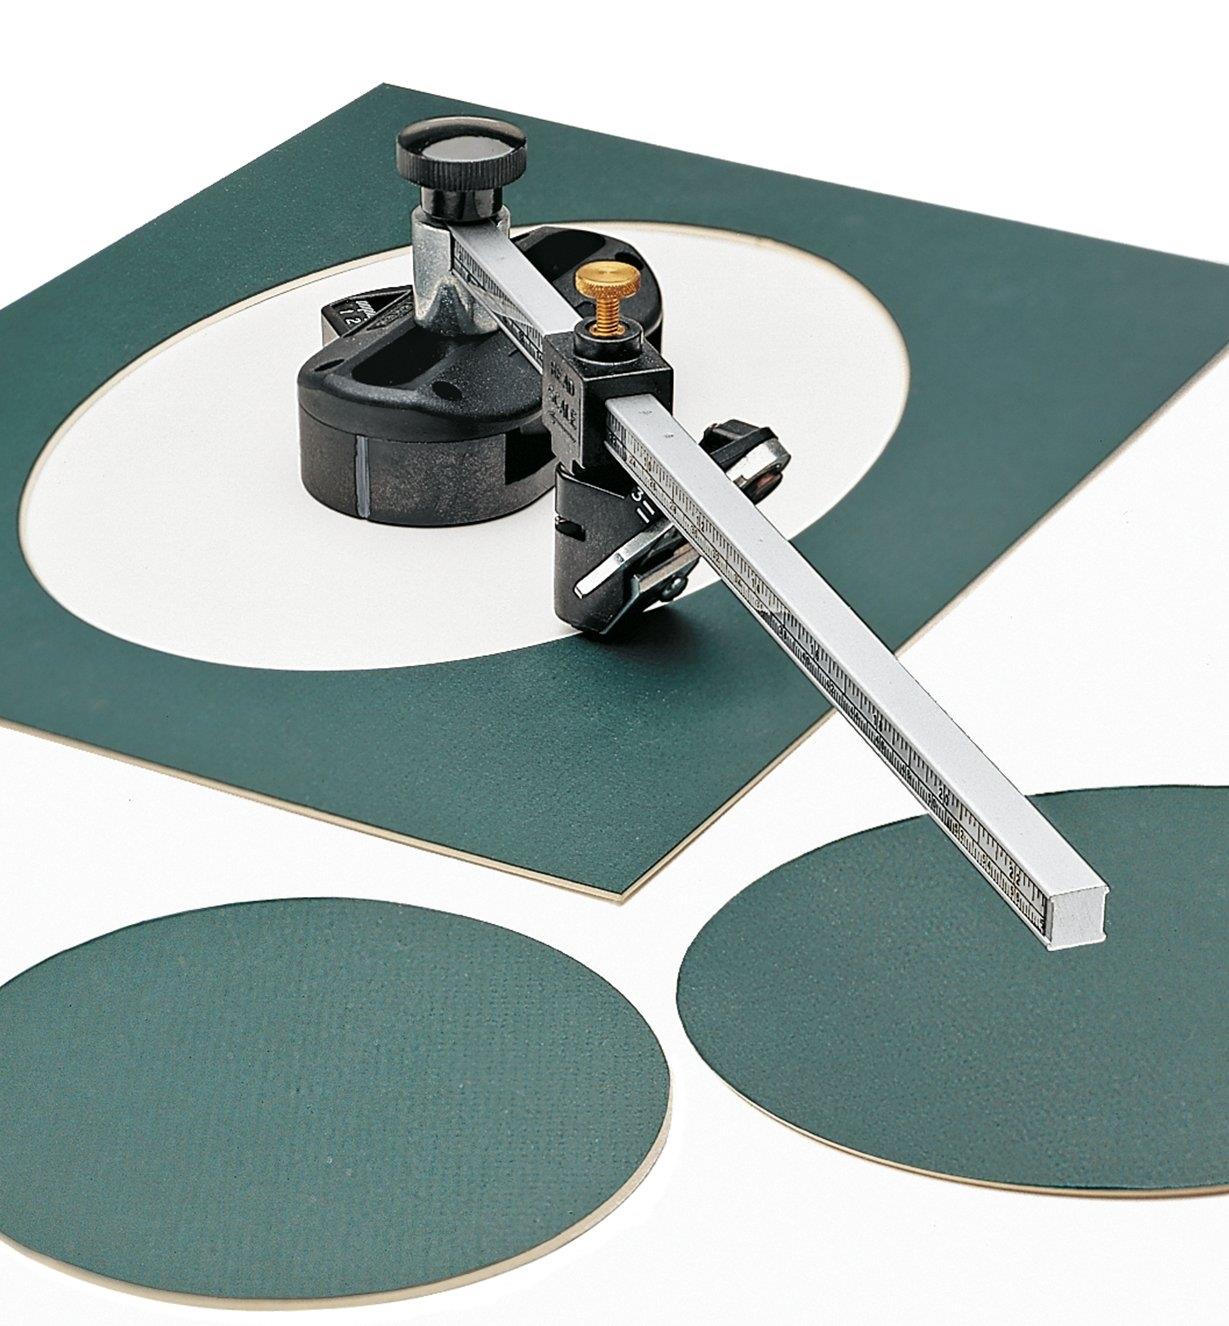 86K0701 - MatMate Oval/Circle Mat Cutter